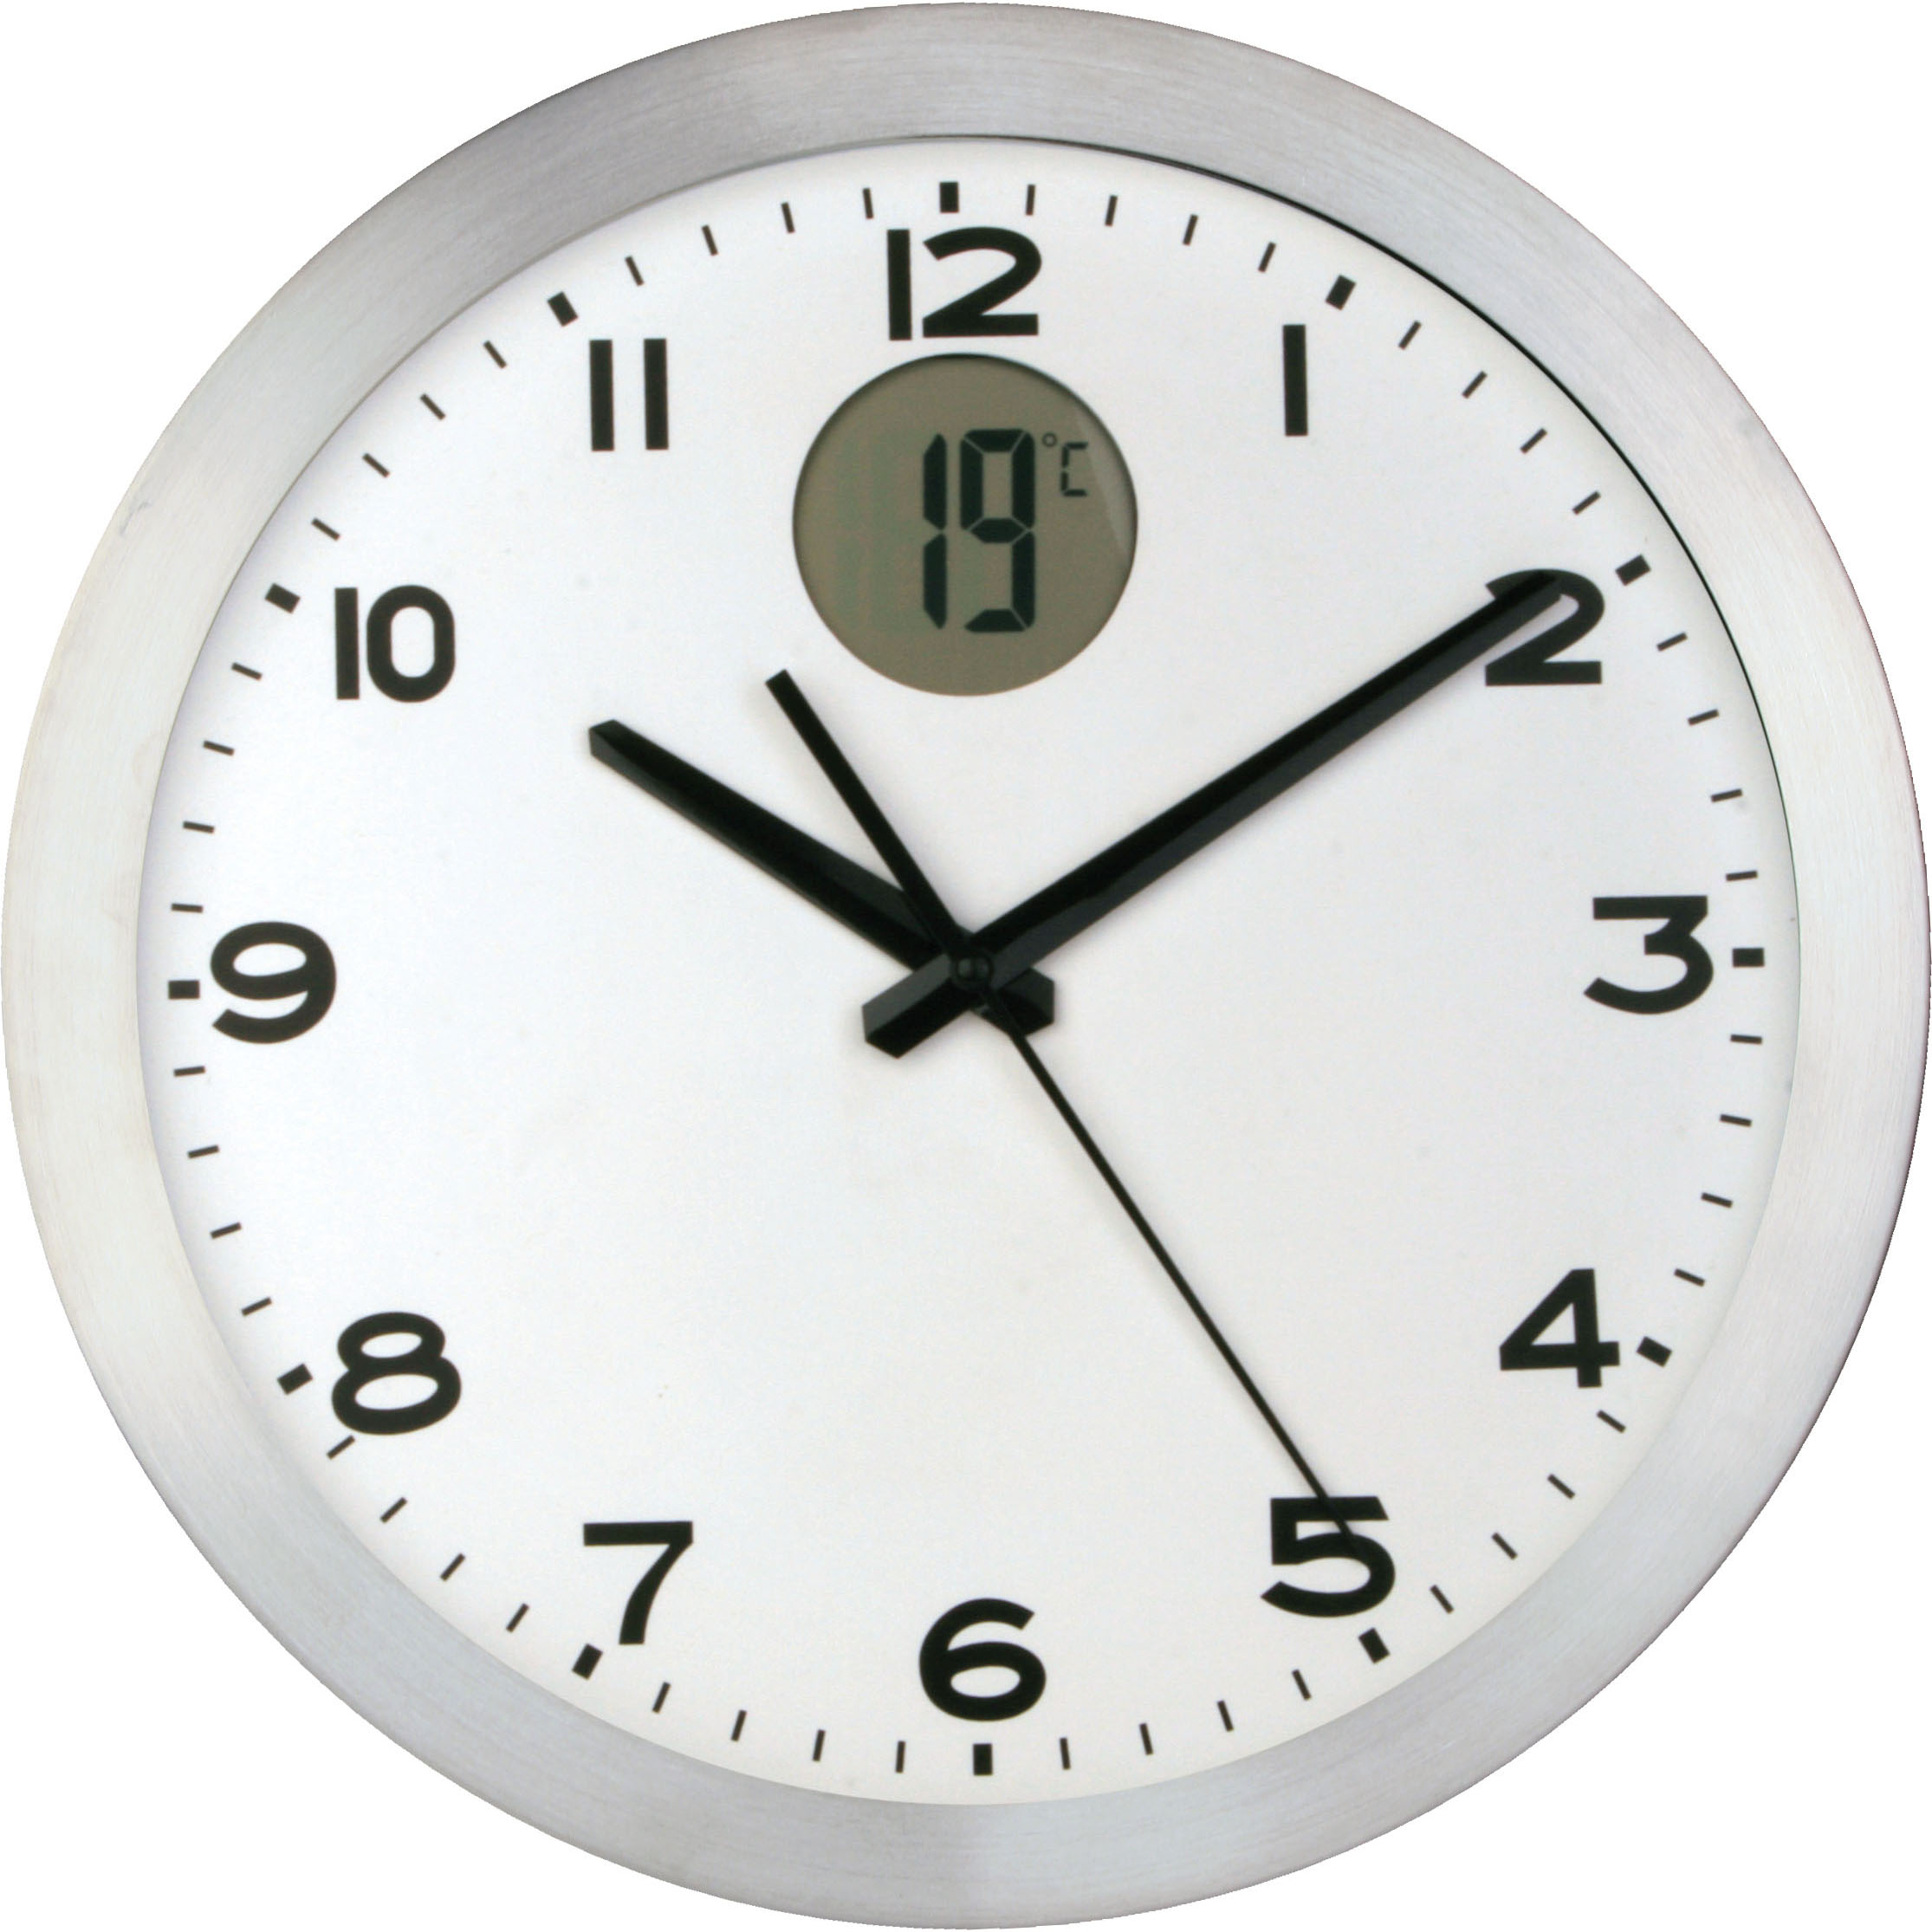 orologio da parete, orologio in alluminio, orologio con termometro  digitale, orologio facile da smontare, orologio con stampa, orologio vetro,  orologio 30x4 cm.